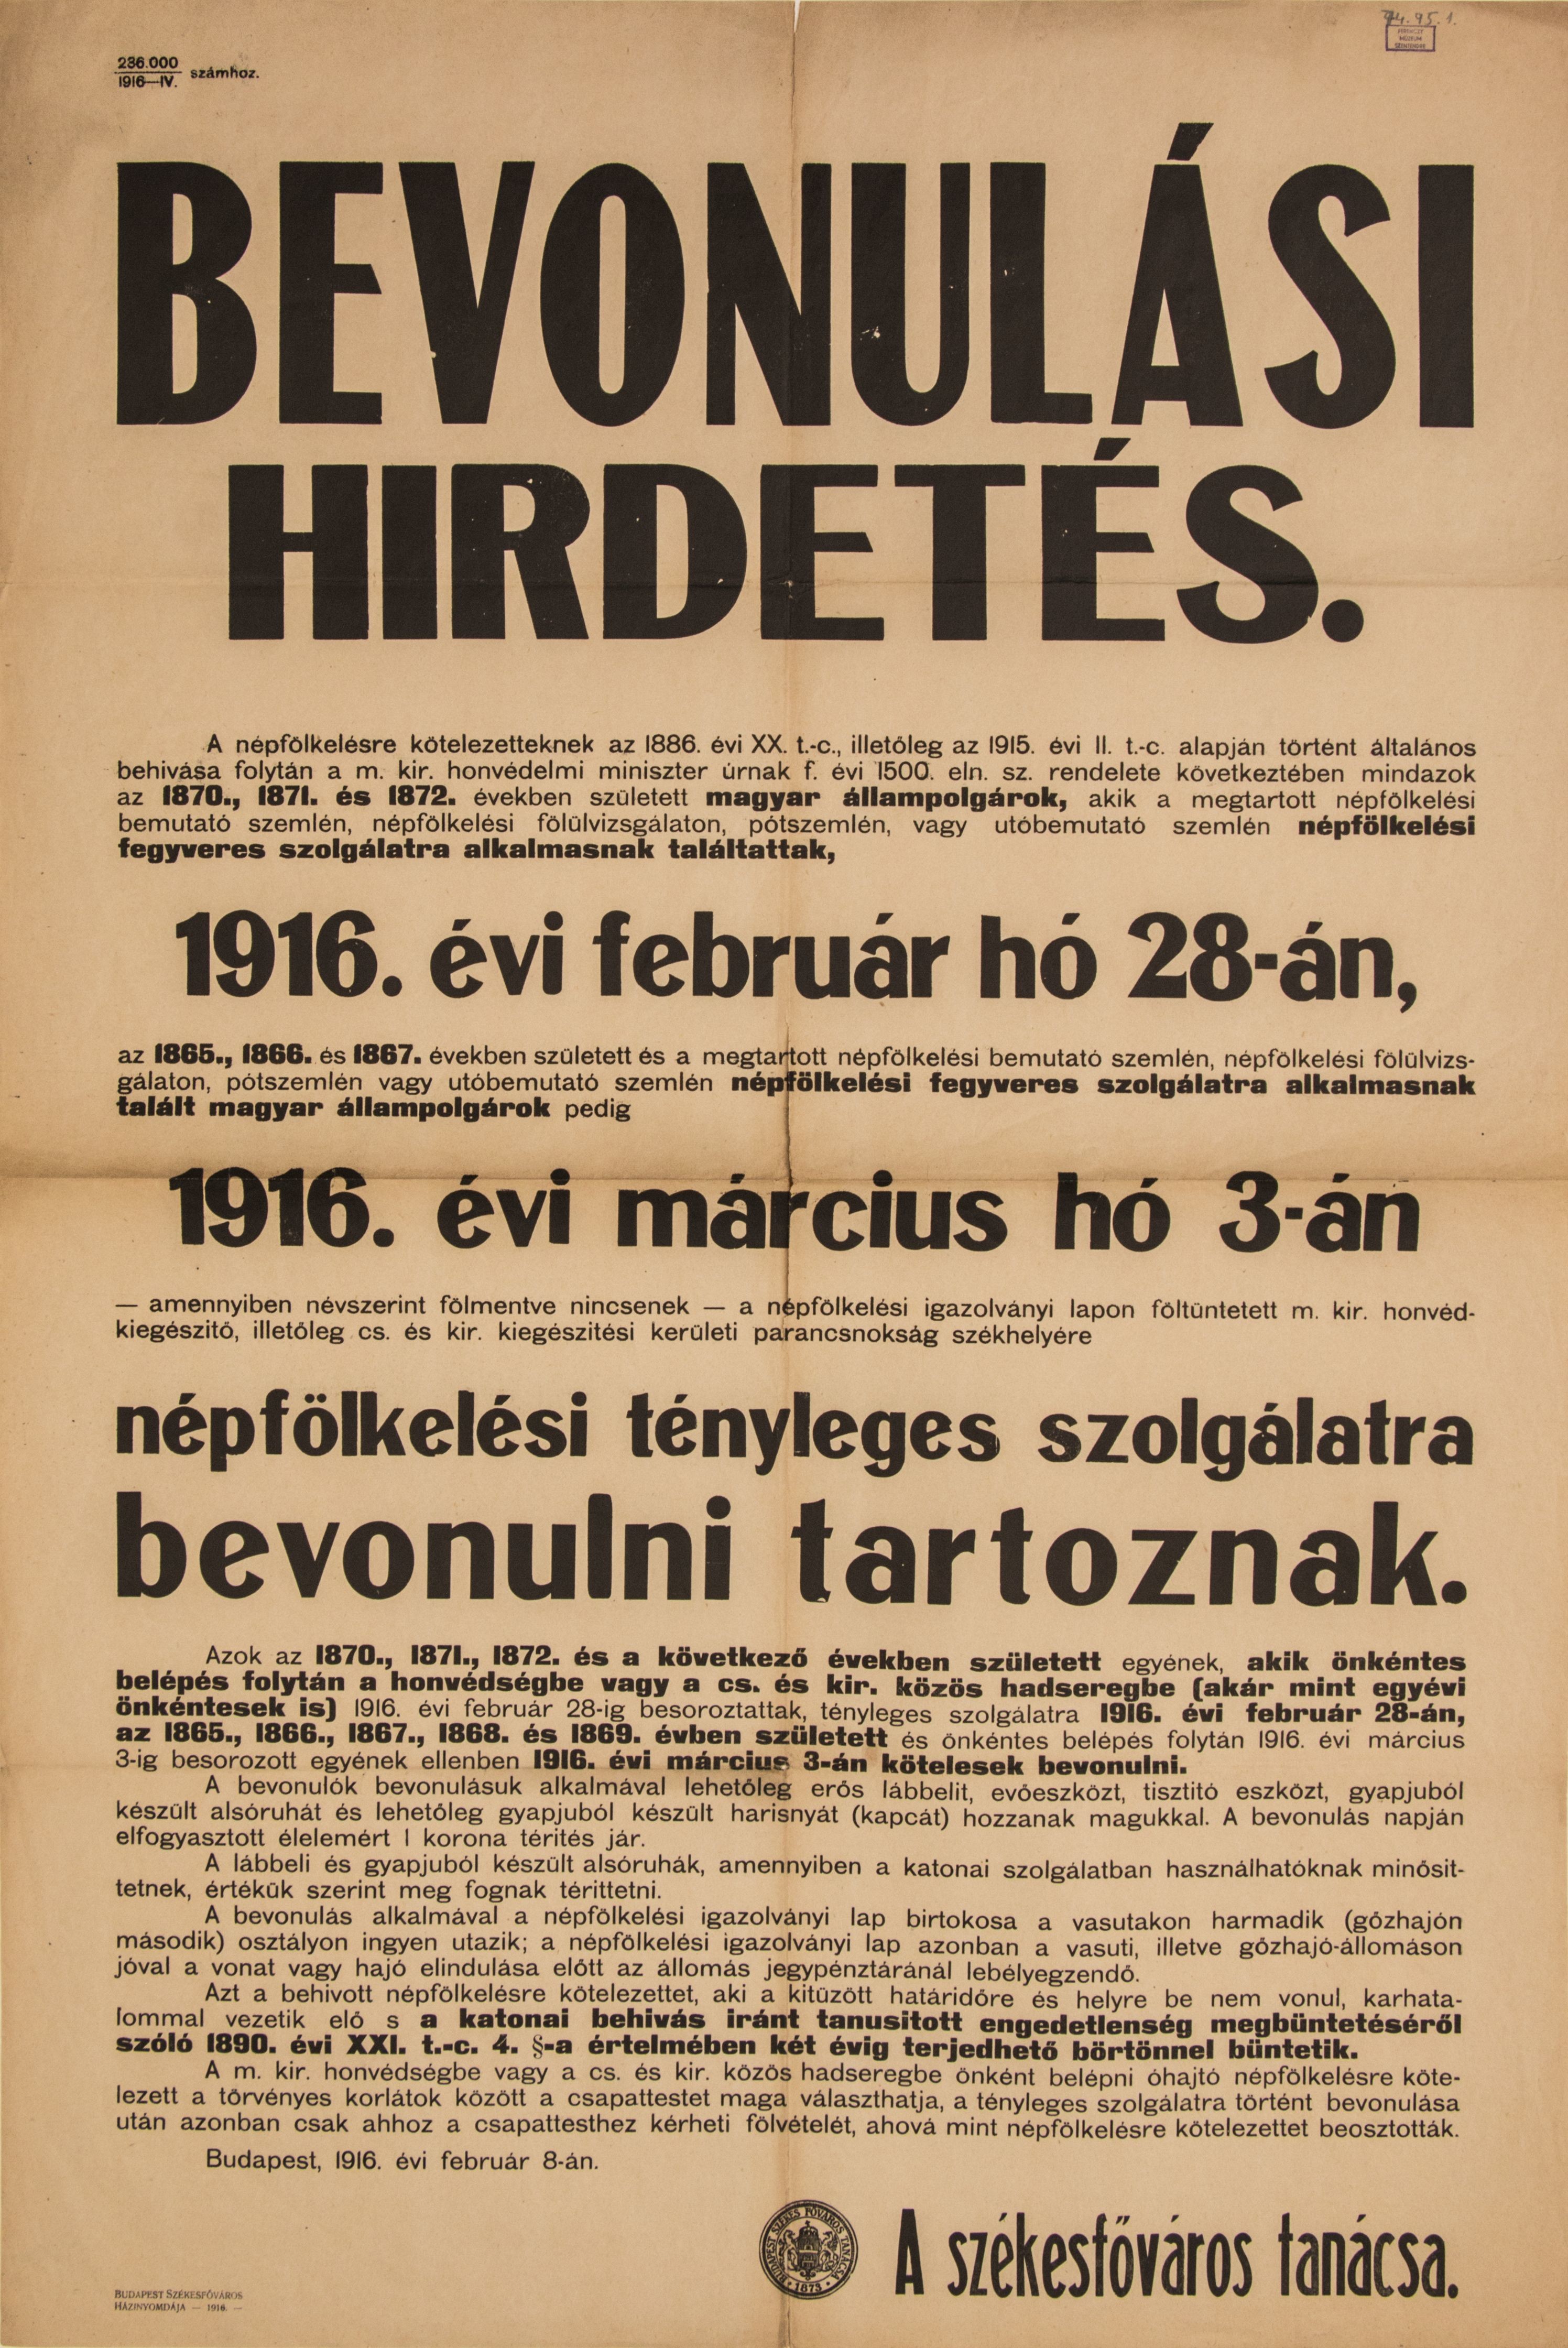 Bevonulási hirdetés, (Székesfőváros Tanácsa) 1916.02.08. (Ferenczy Múzeumi Centrum CC BY-NC-SA)